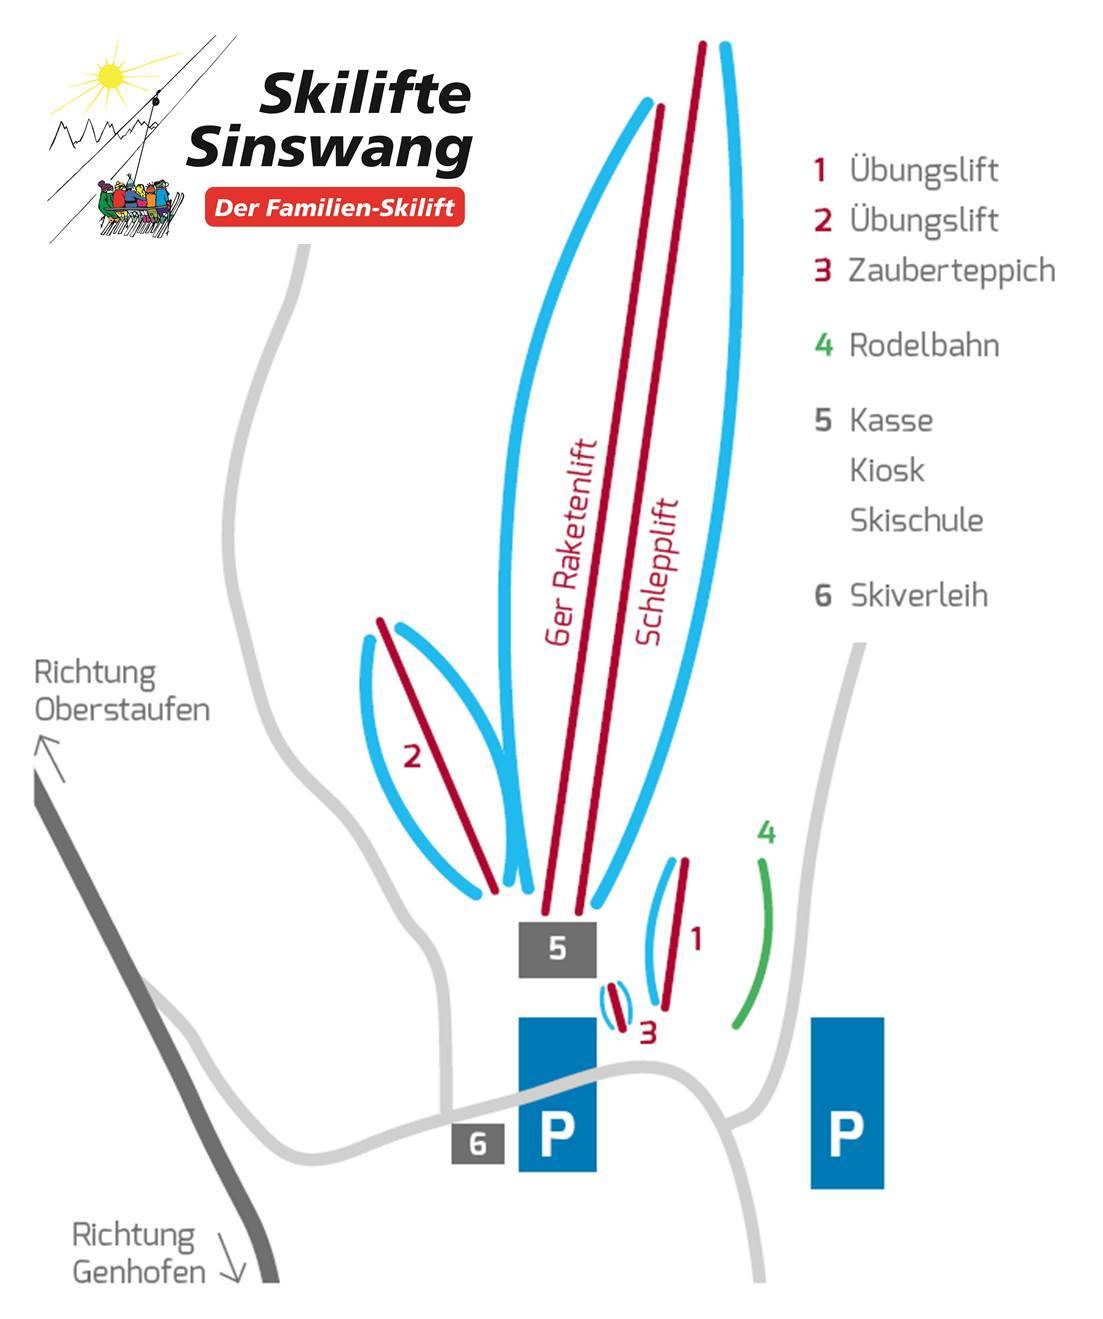 Sinswang (Oberstaufen)